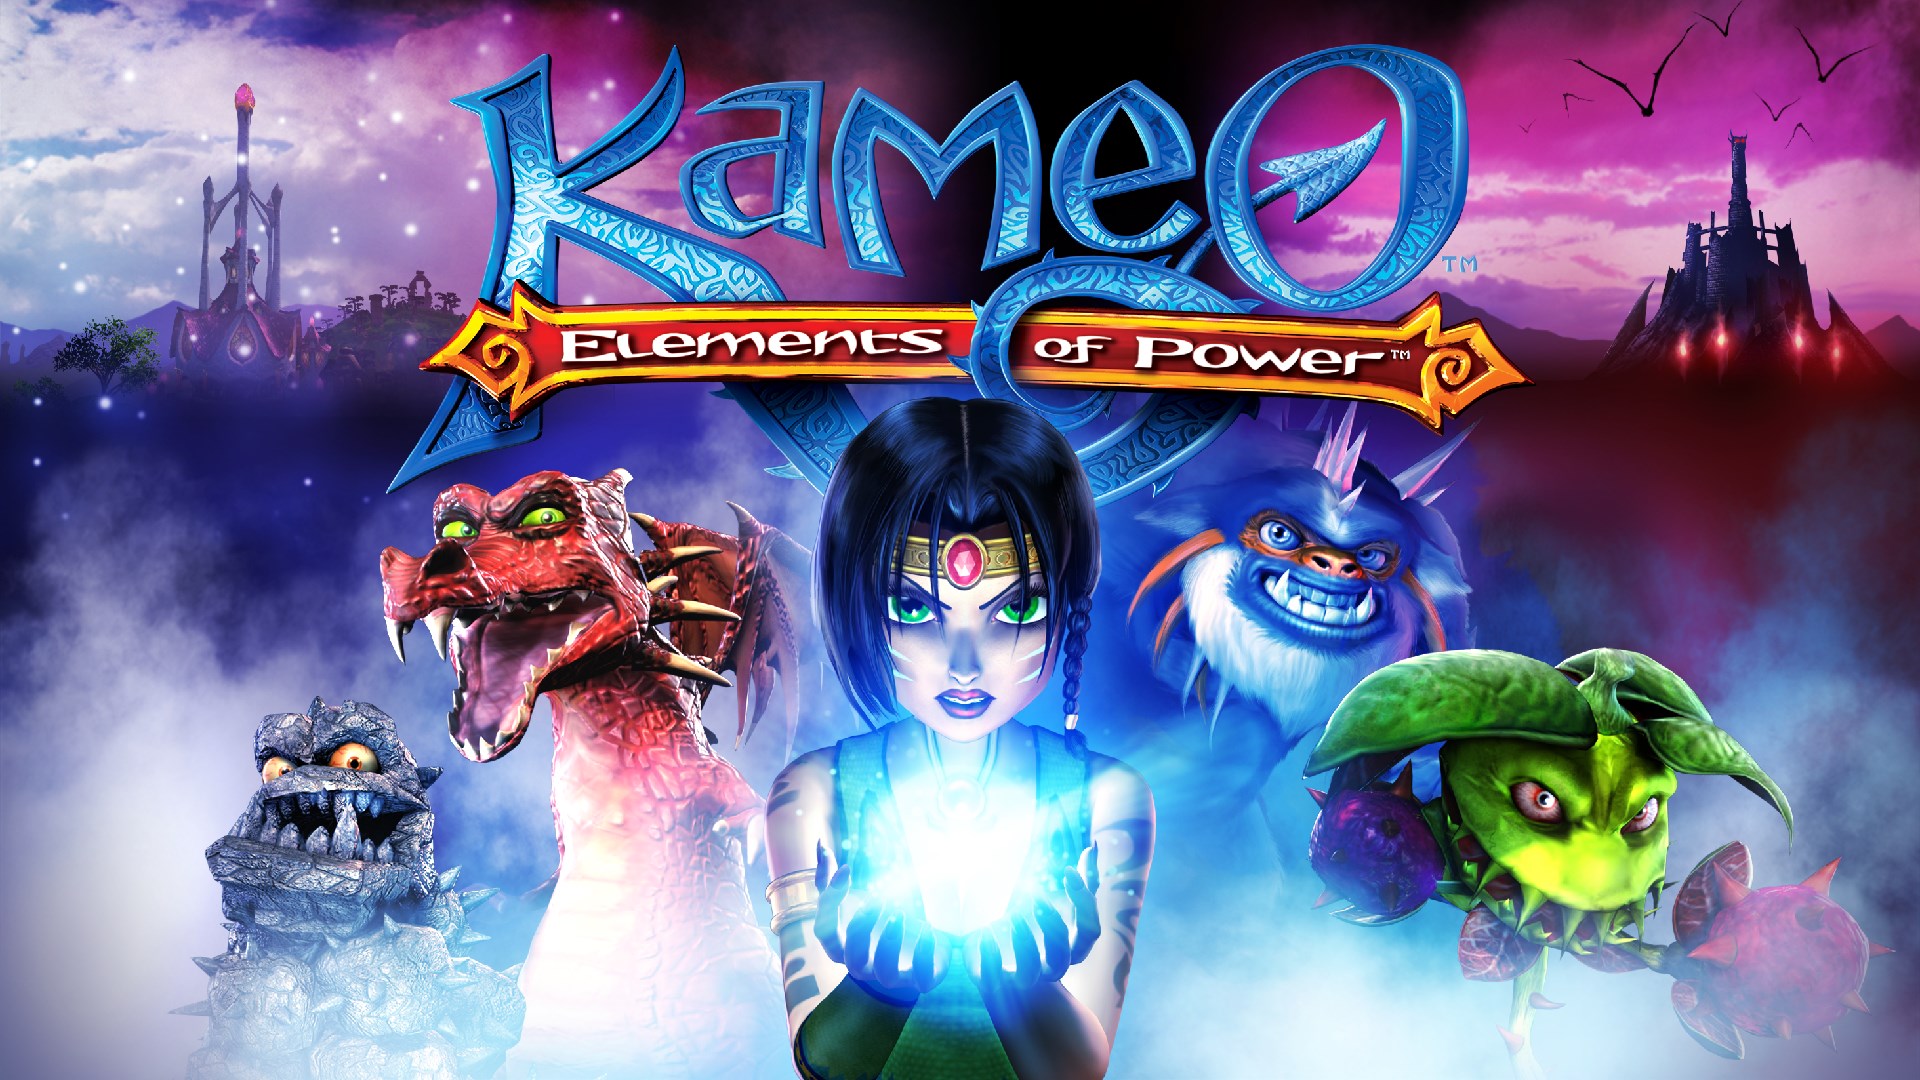 kameo game